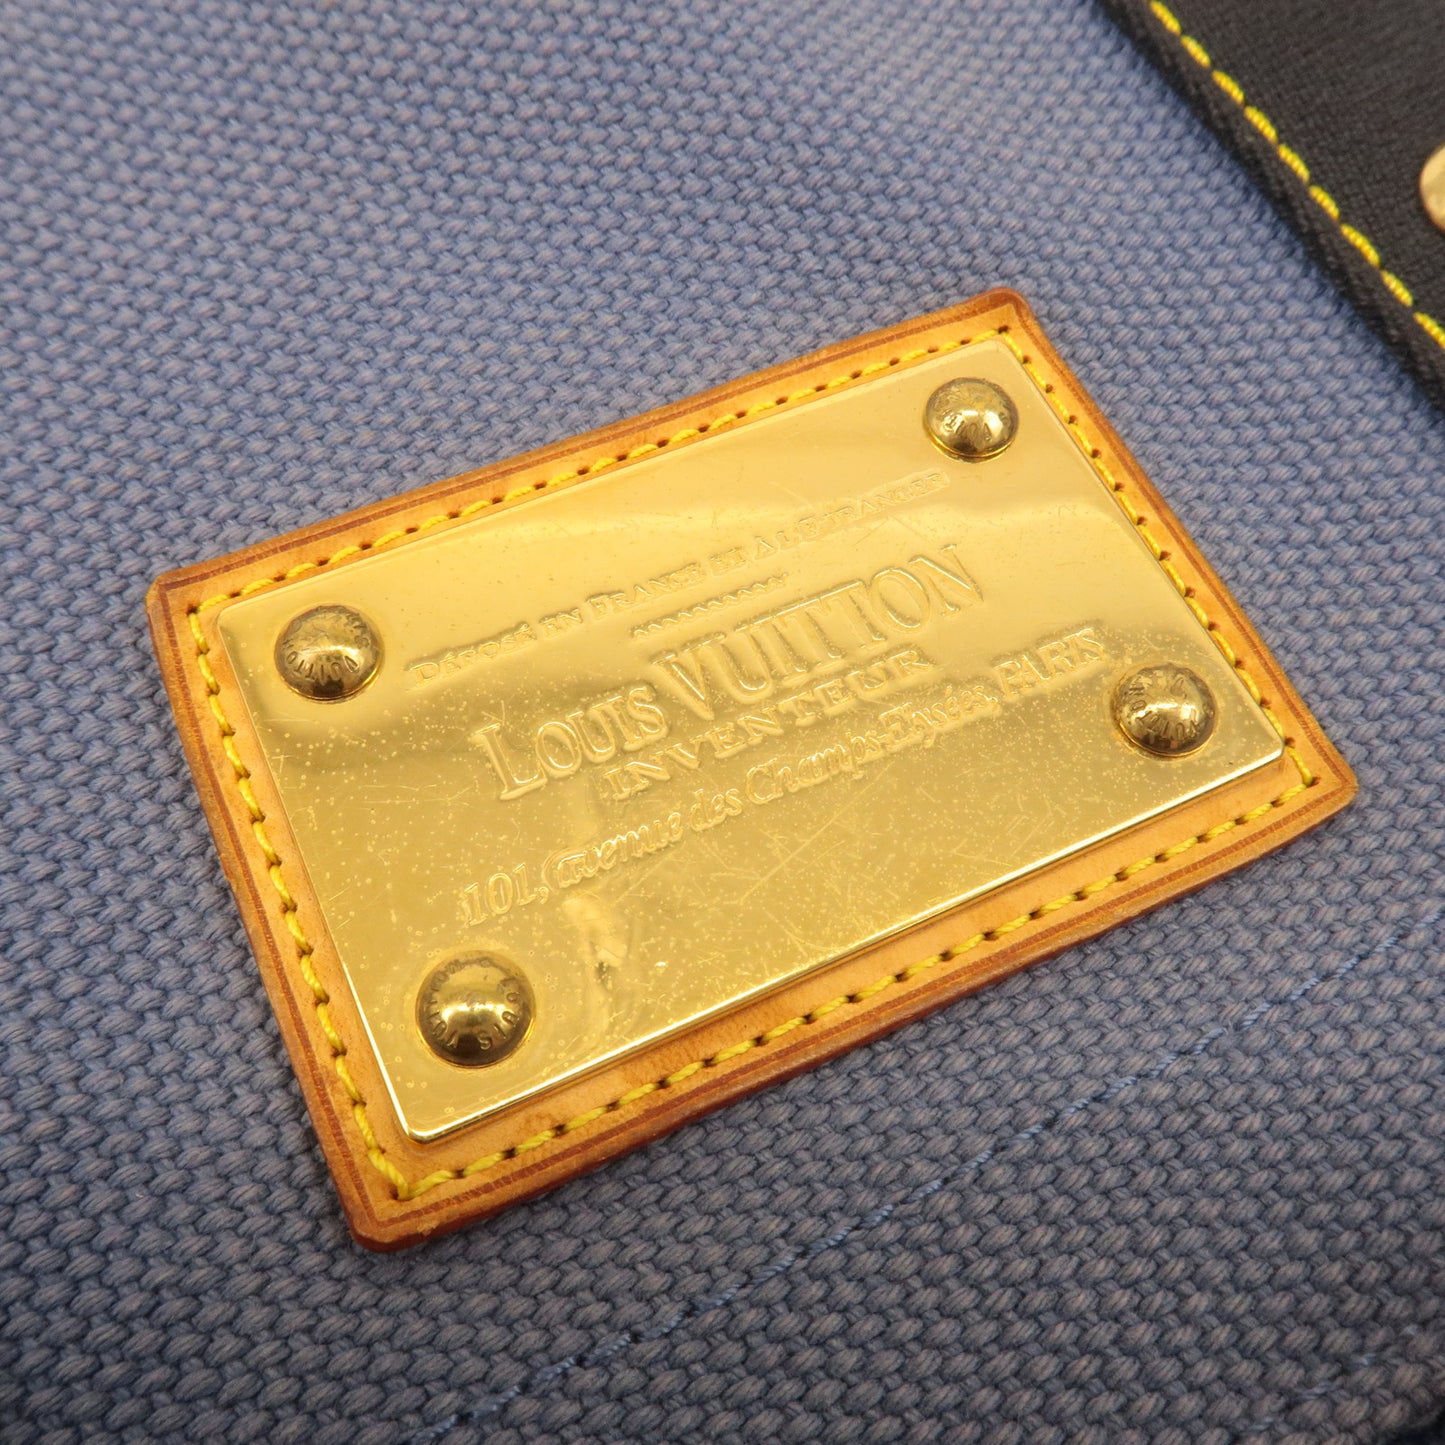 Authentic Louis Vuitton Antigua Besace PM Shoulder Bag Blue M40081 Used F/S